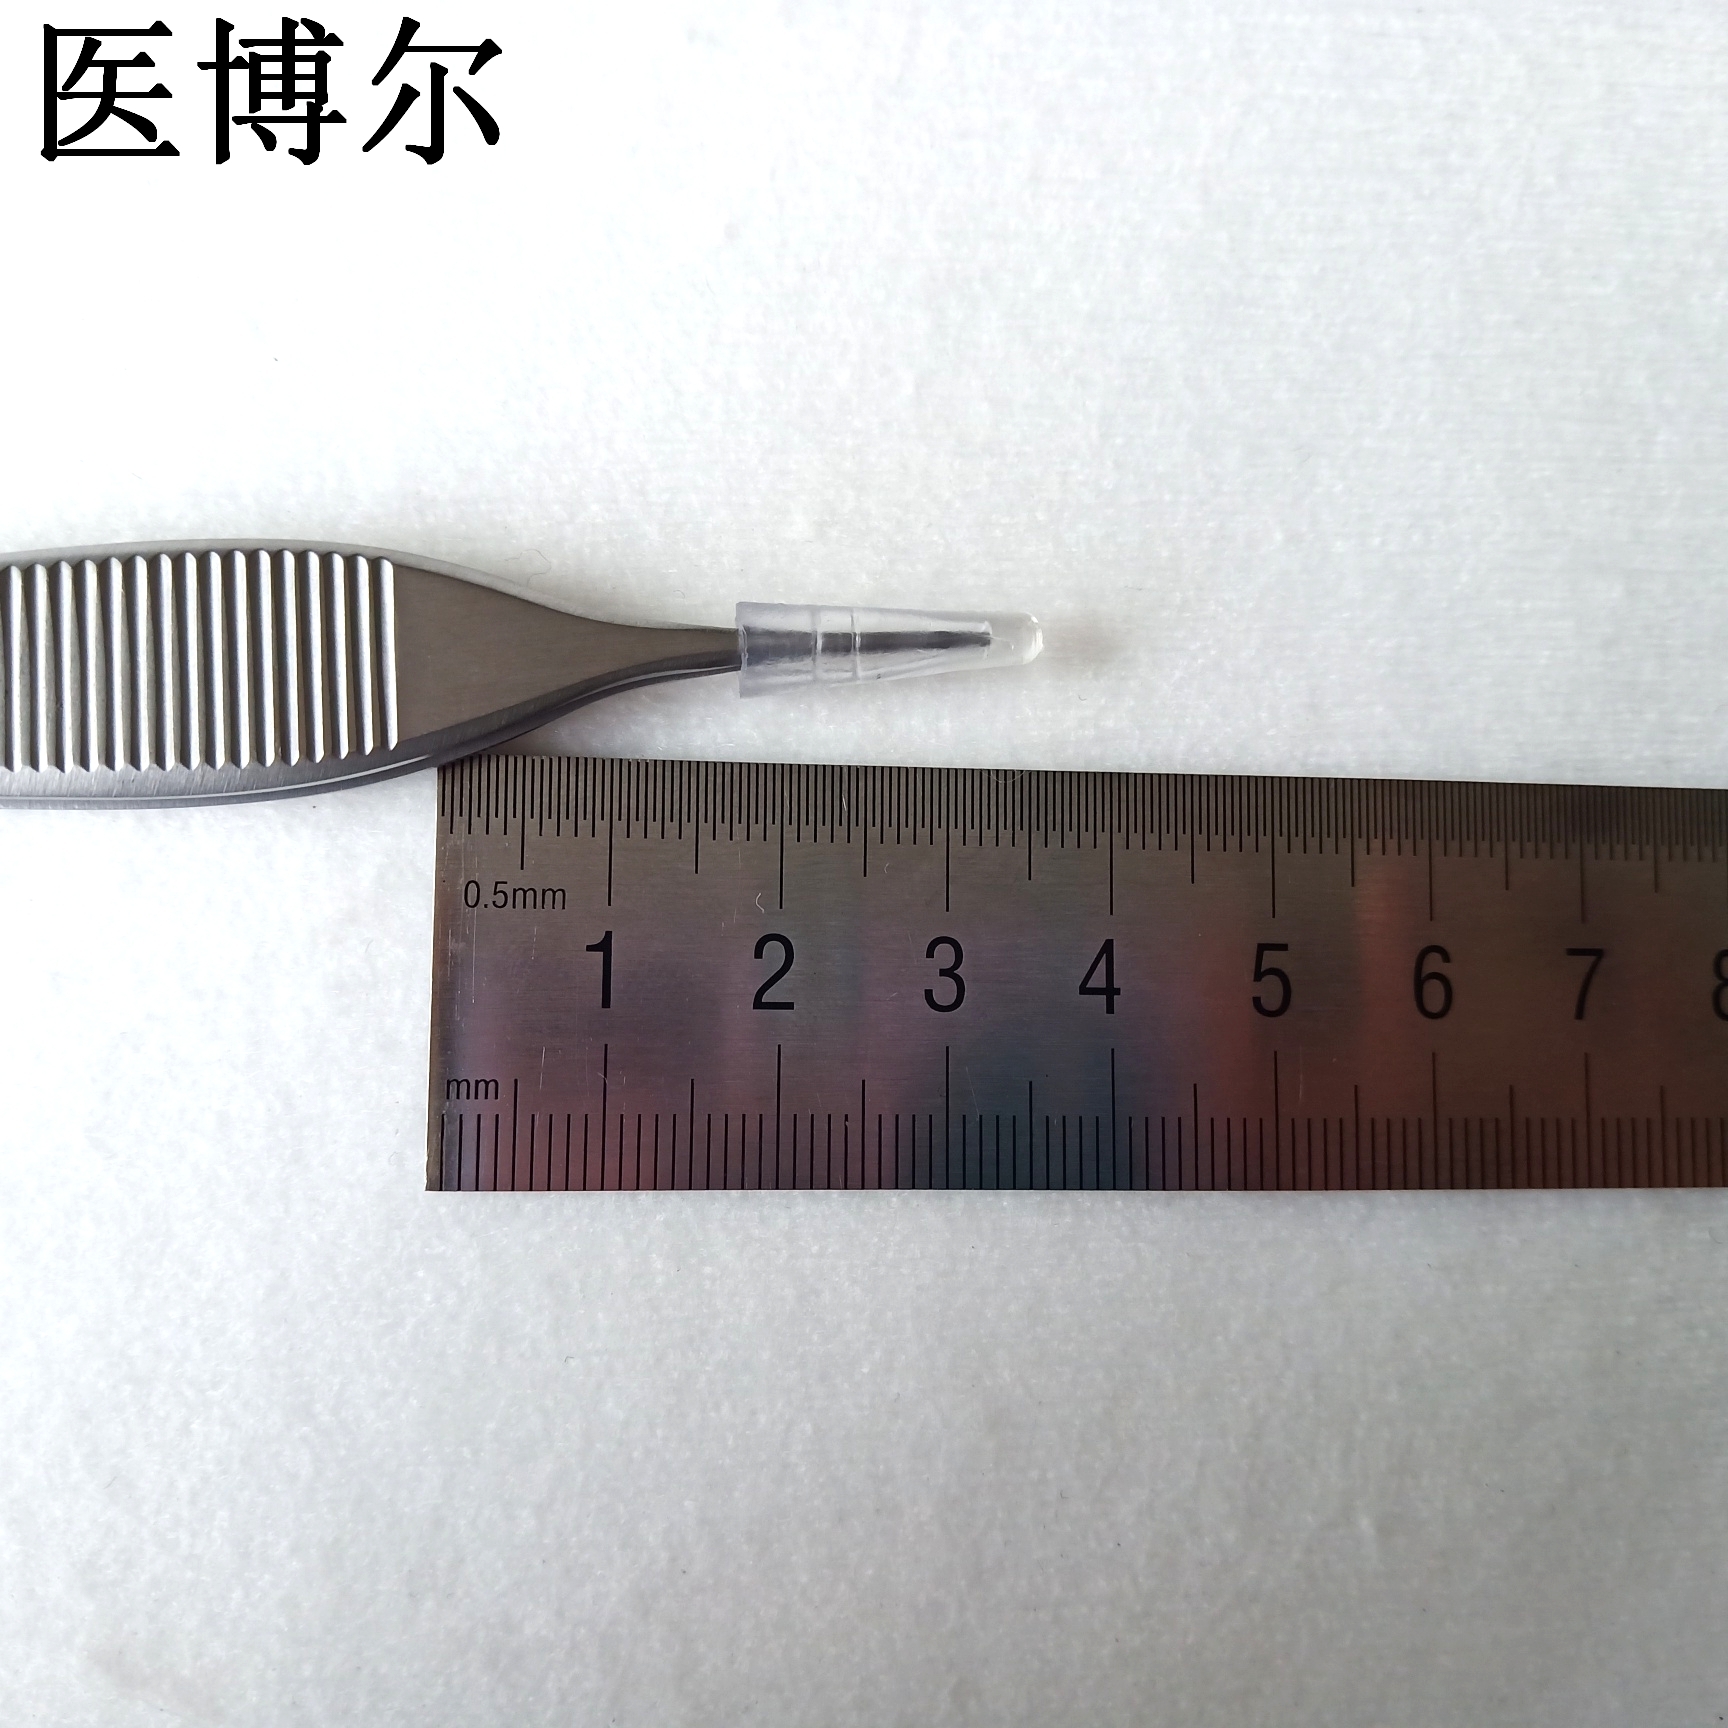 14cm整形镊1.0齿 (7)_看图王.jpg